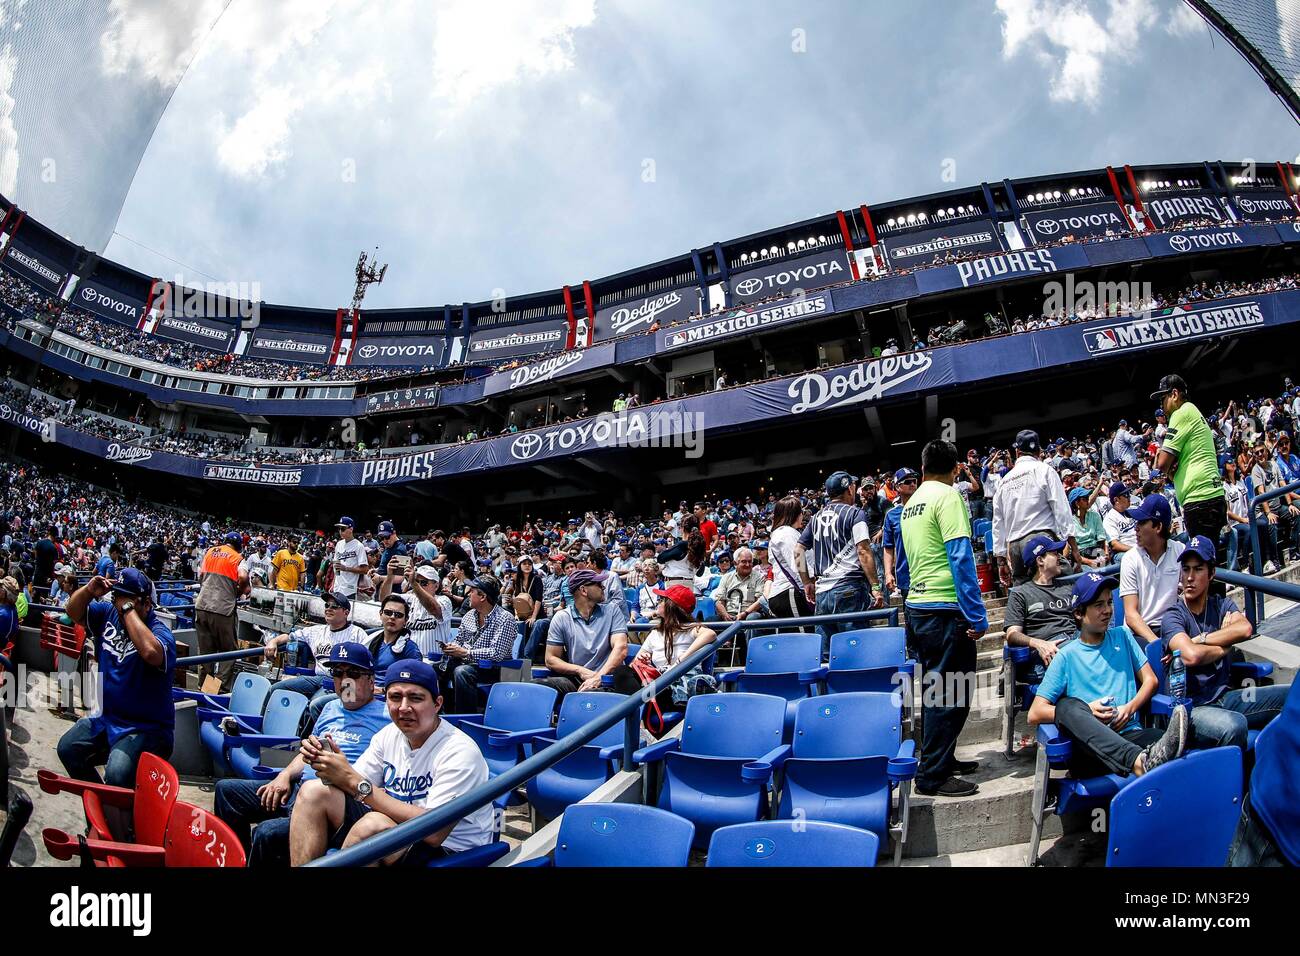 Acciones del partido de beisbol, Dodgers de Los Angeles contra Padres de San Diego, tercer juego de la Serie en Mexico de las Ligas Mayores del Beisbol, realizado en el estadio de los Sultanes de Monterrey, Mexico el domingo 6 de Mayo 2018. (Photo: Luis Gutierrez) Stock Photo